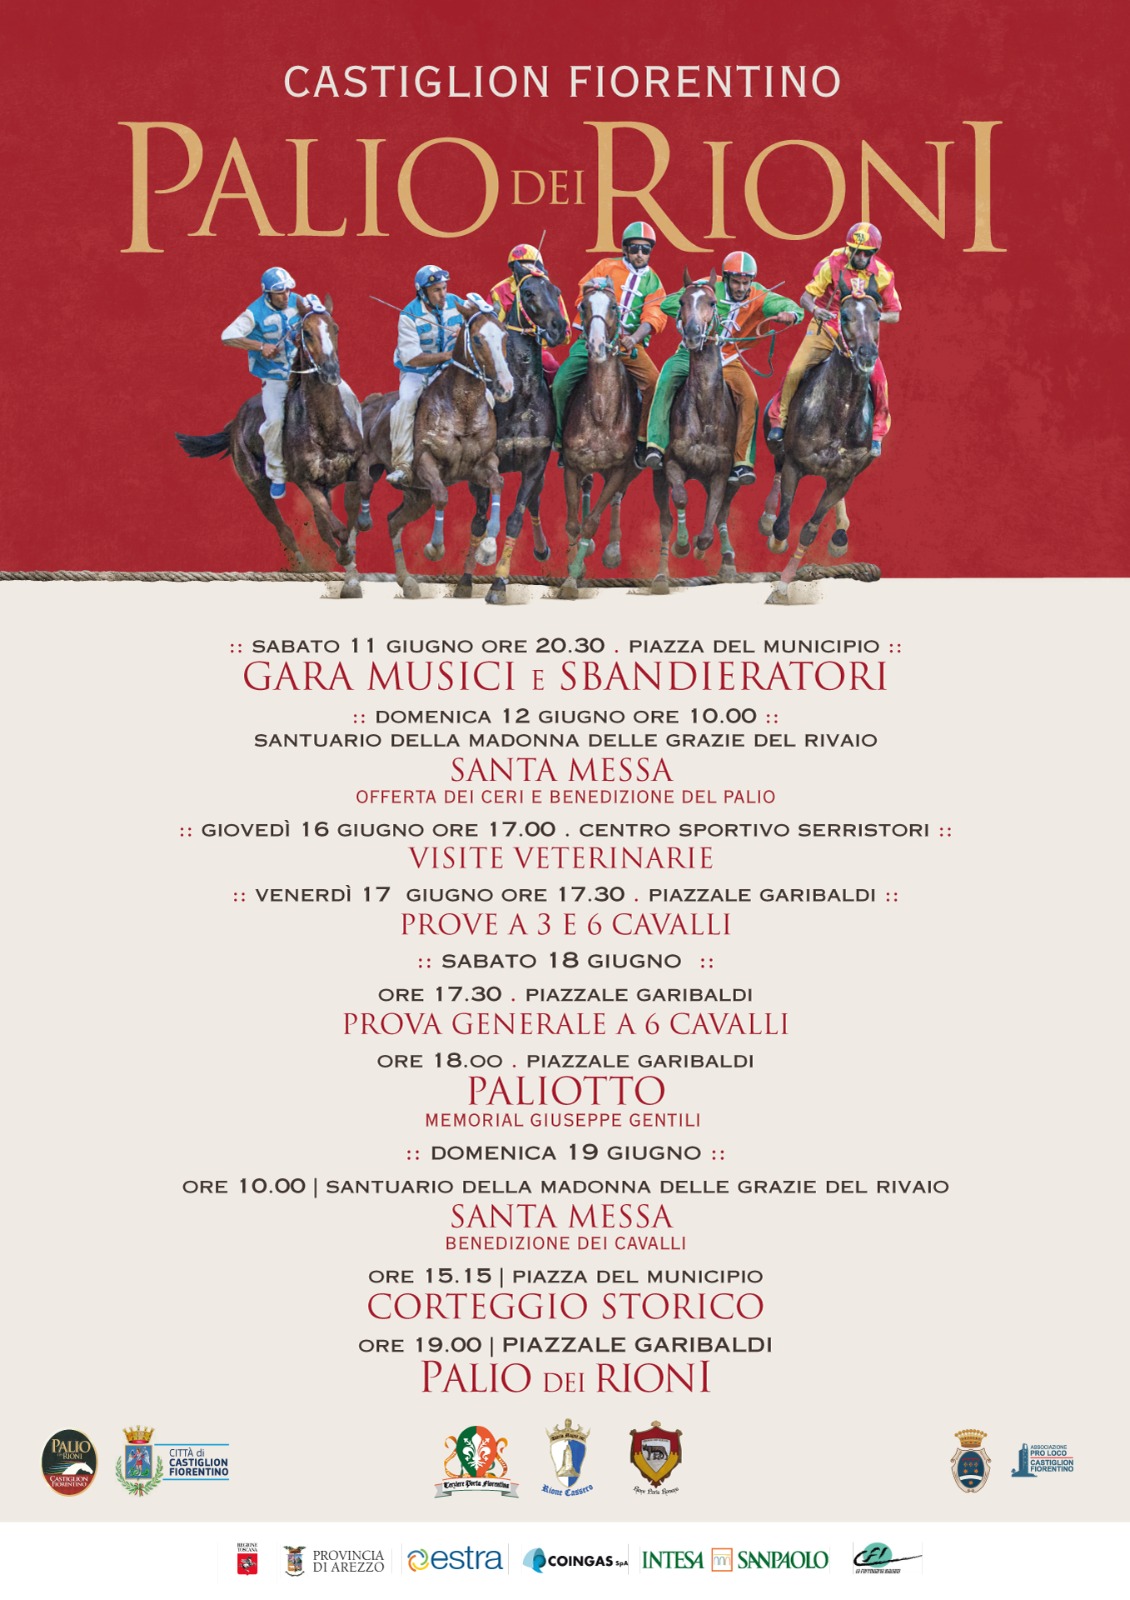 Castiglion Fiorentino: ecco i probabili nomi dei cavalli e dei fantini presenti